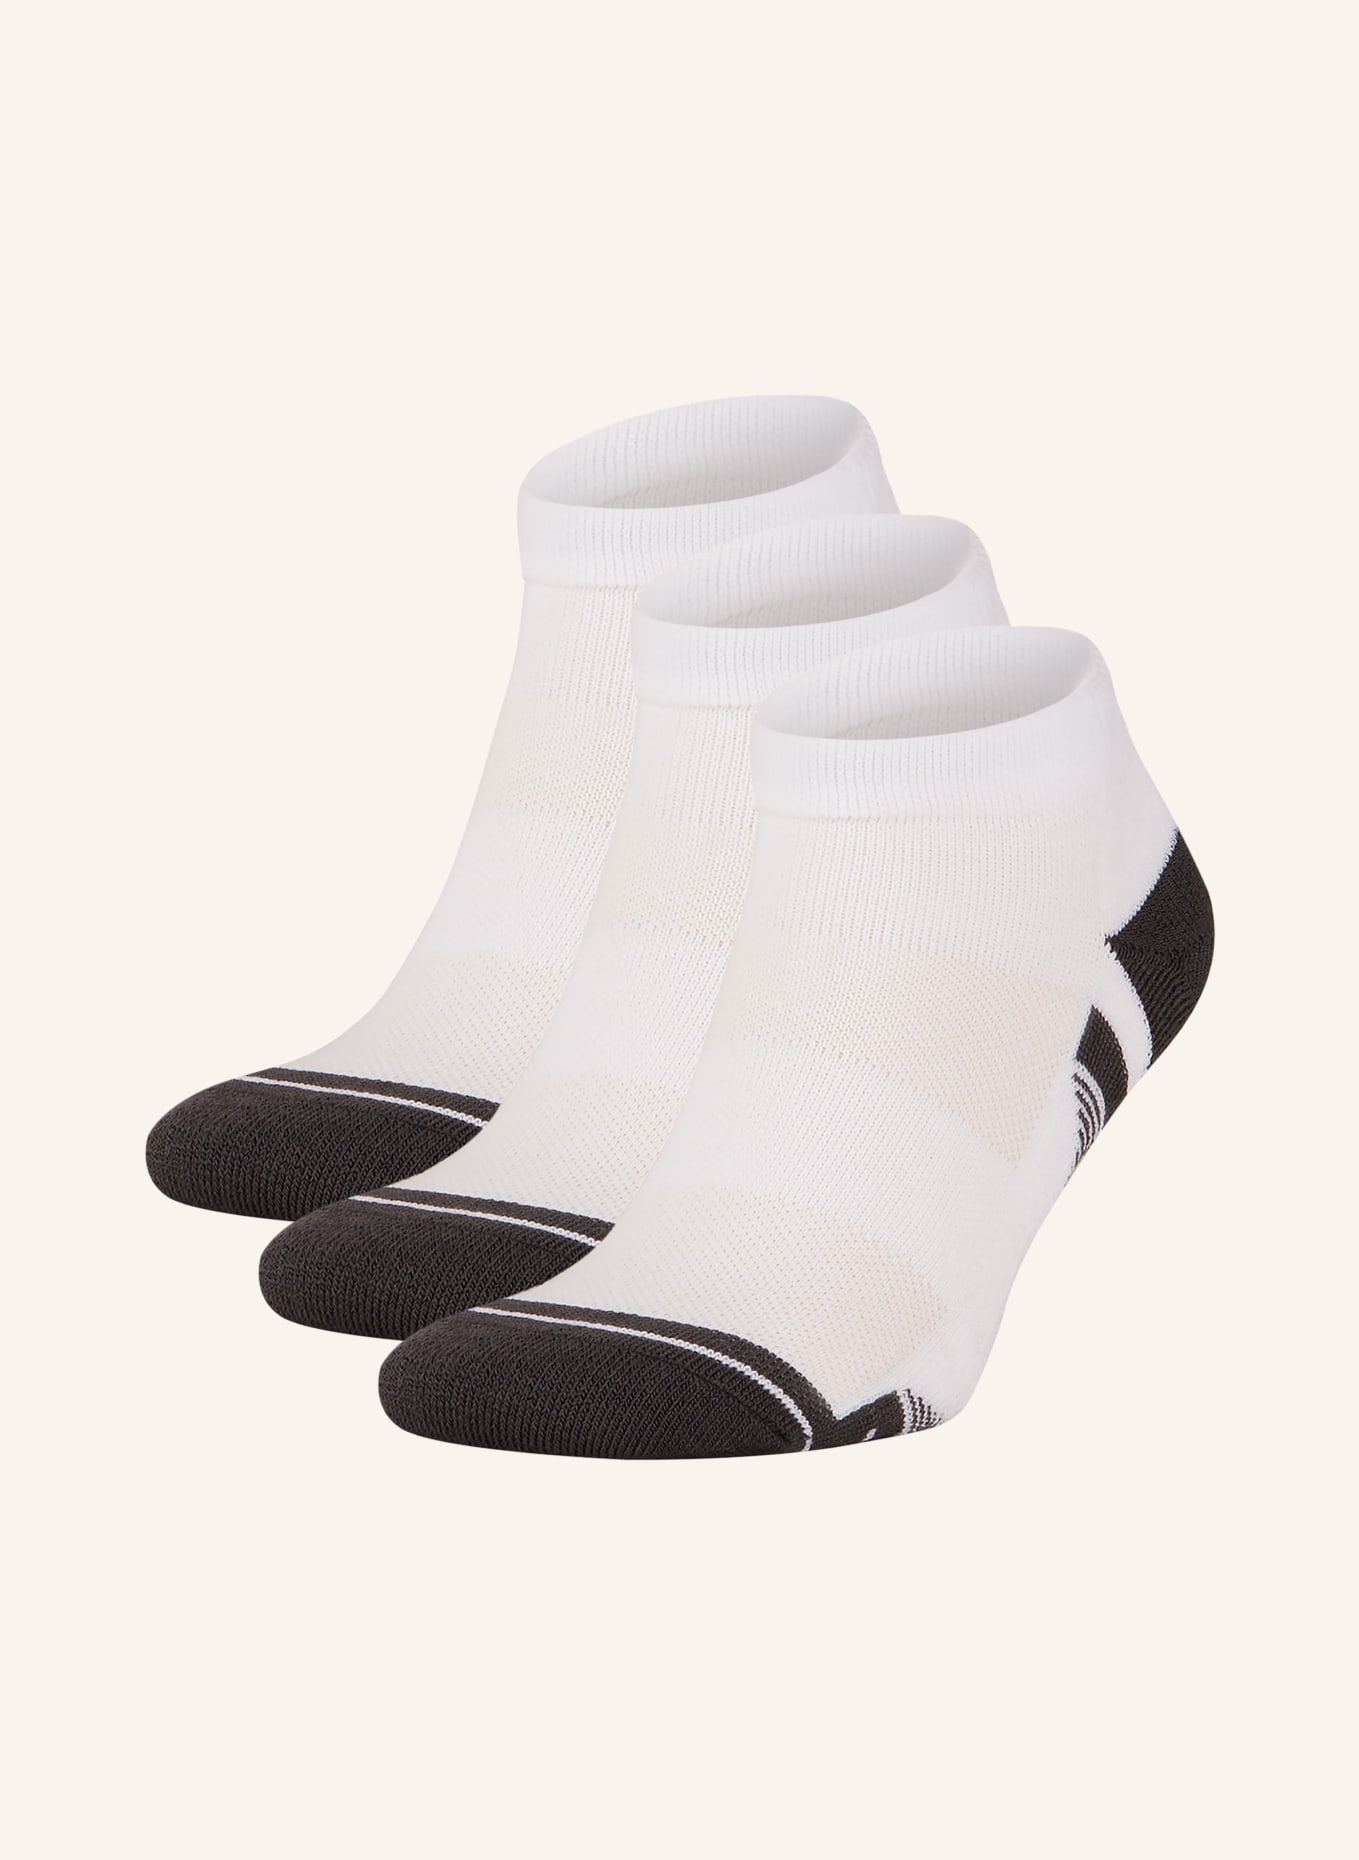 UNDER ARMOUR 3er-Pack Socken PEROFMRANCE TECH, Farbe: 100 WHITE (Bild 1)